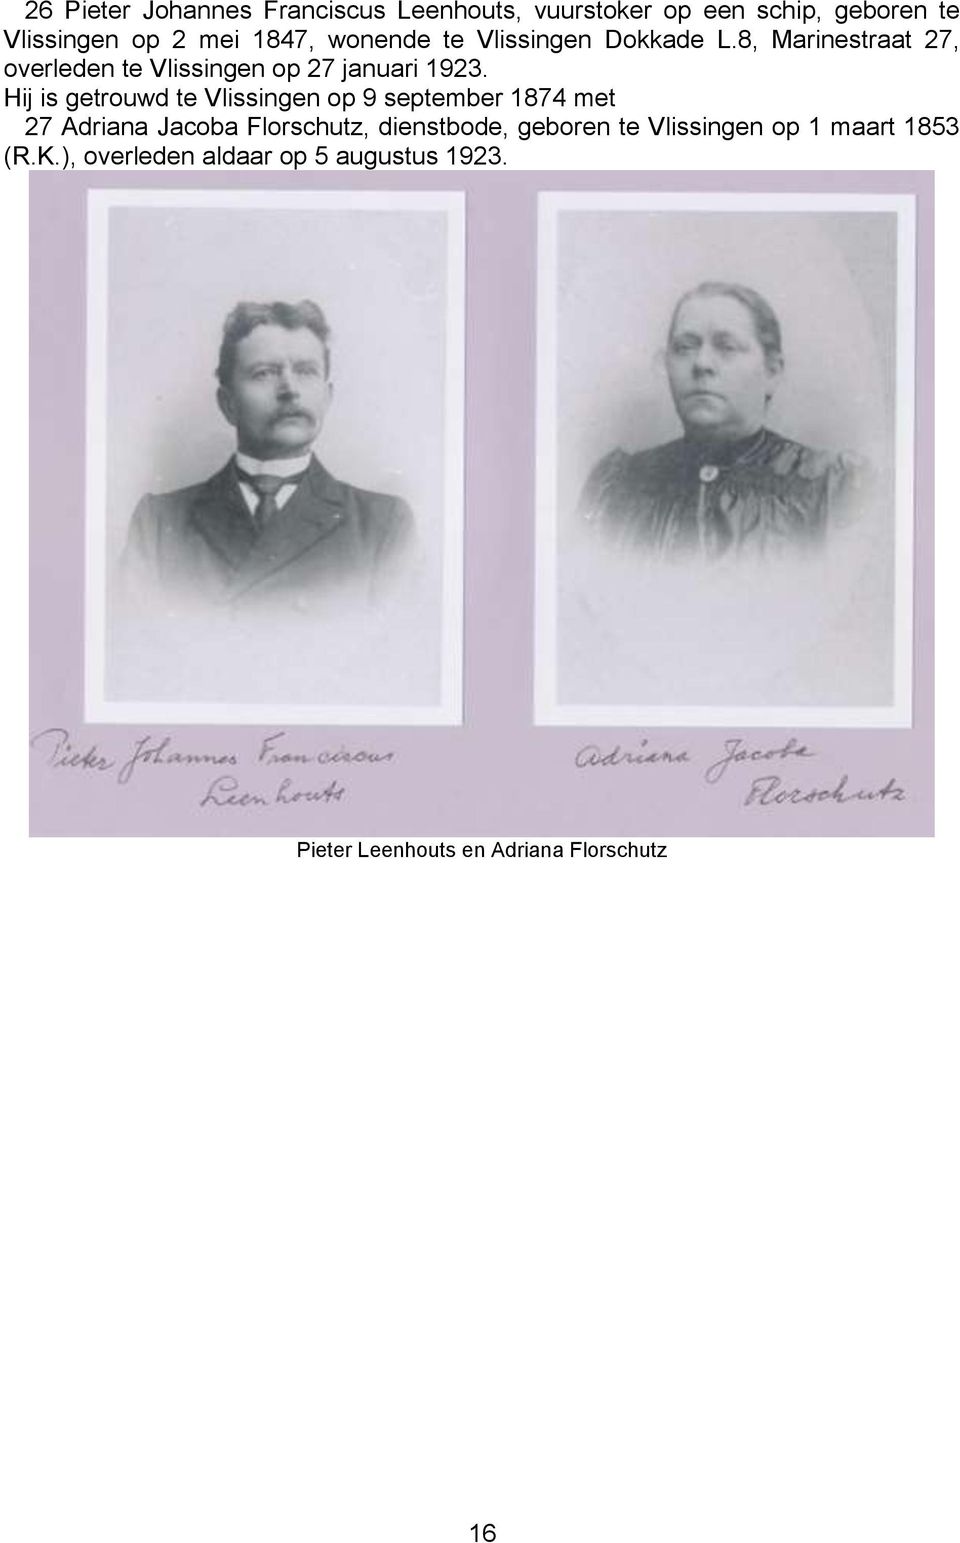 Hij is getrouwd te Vlissingen op 9 september 1874 met 27 Adriana Jacoba Florschutz, dienstbode, geboren